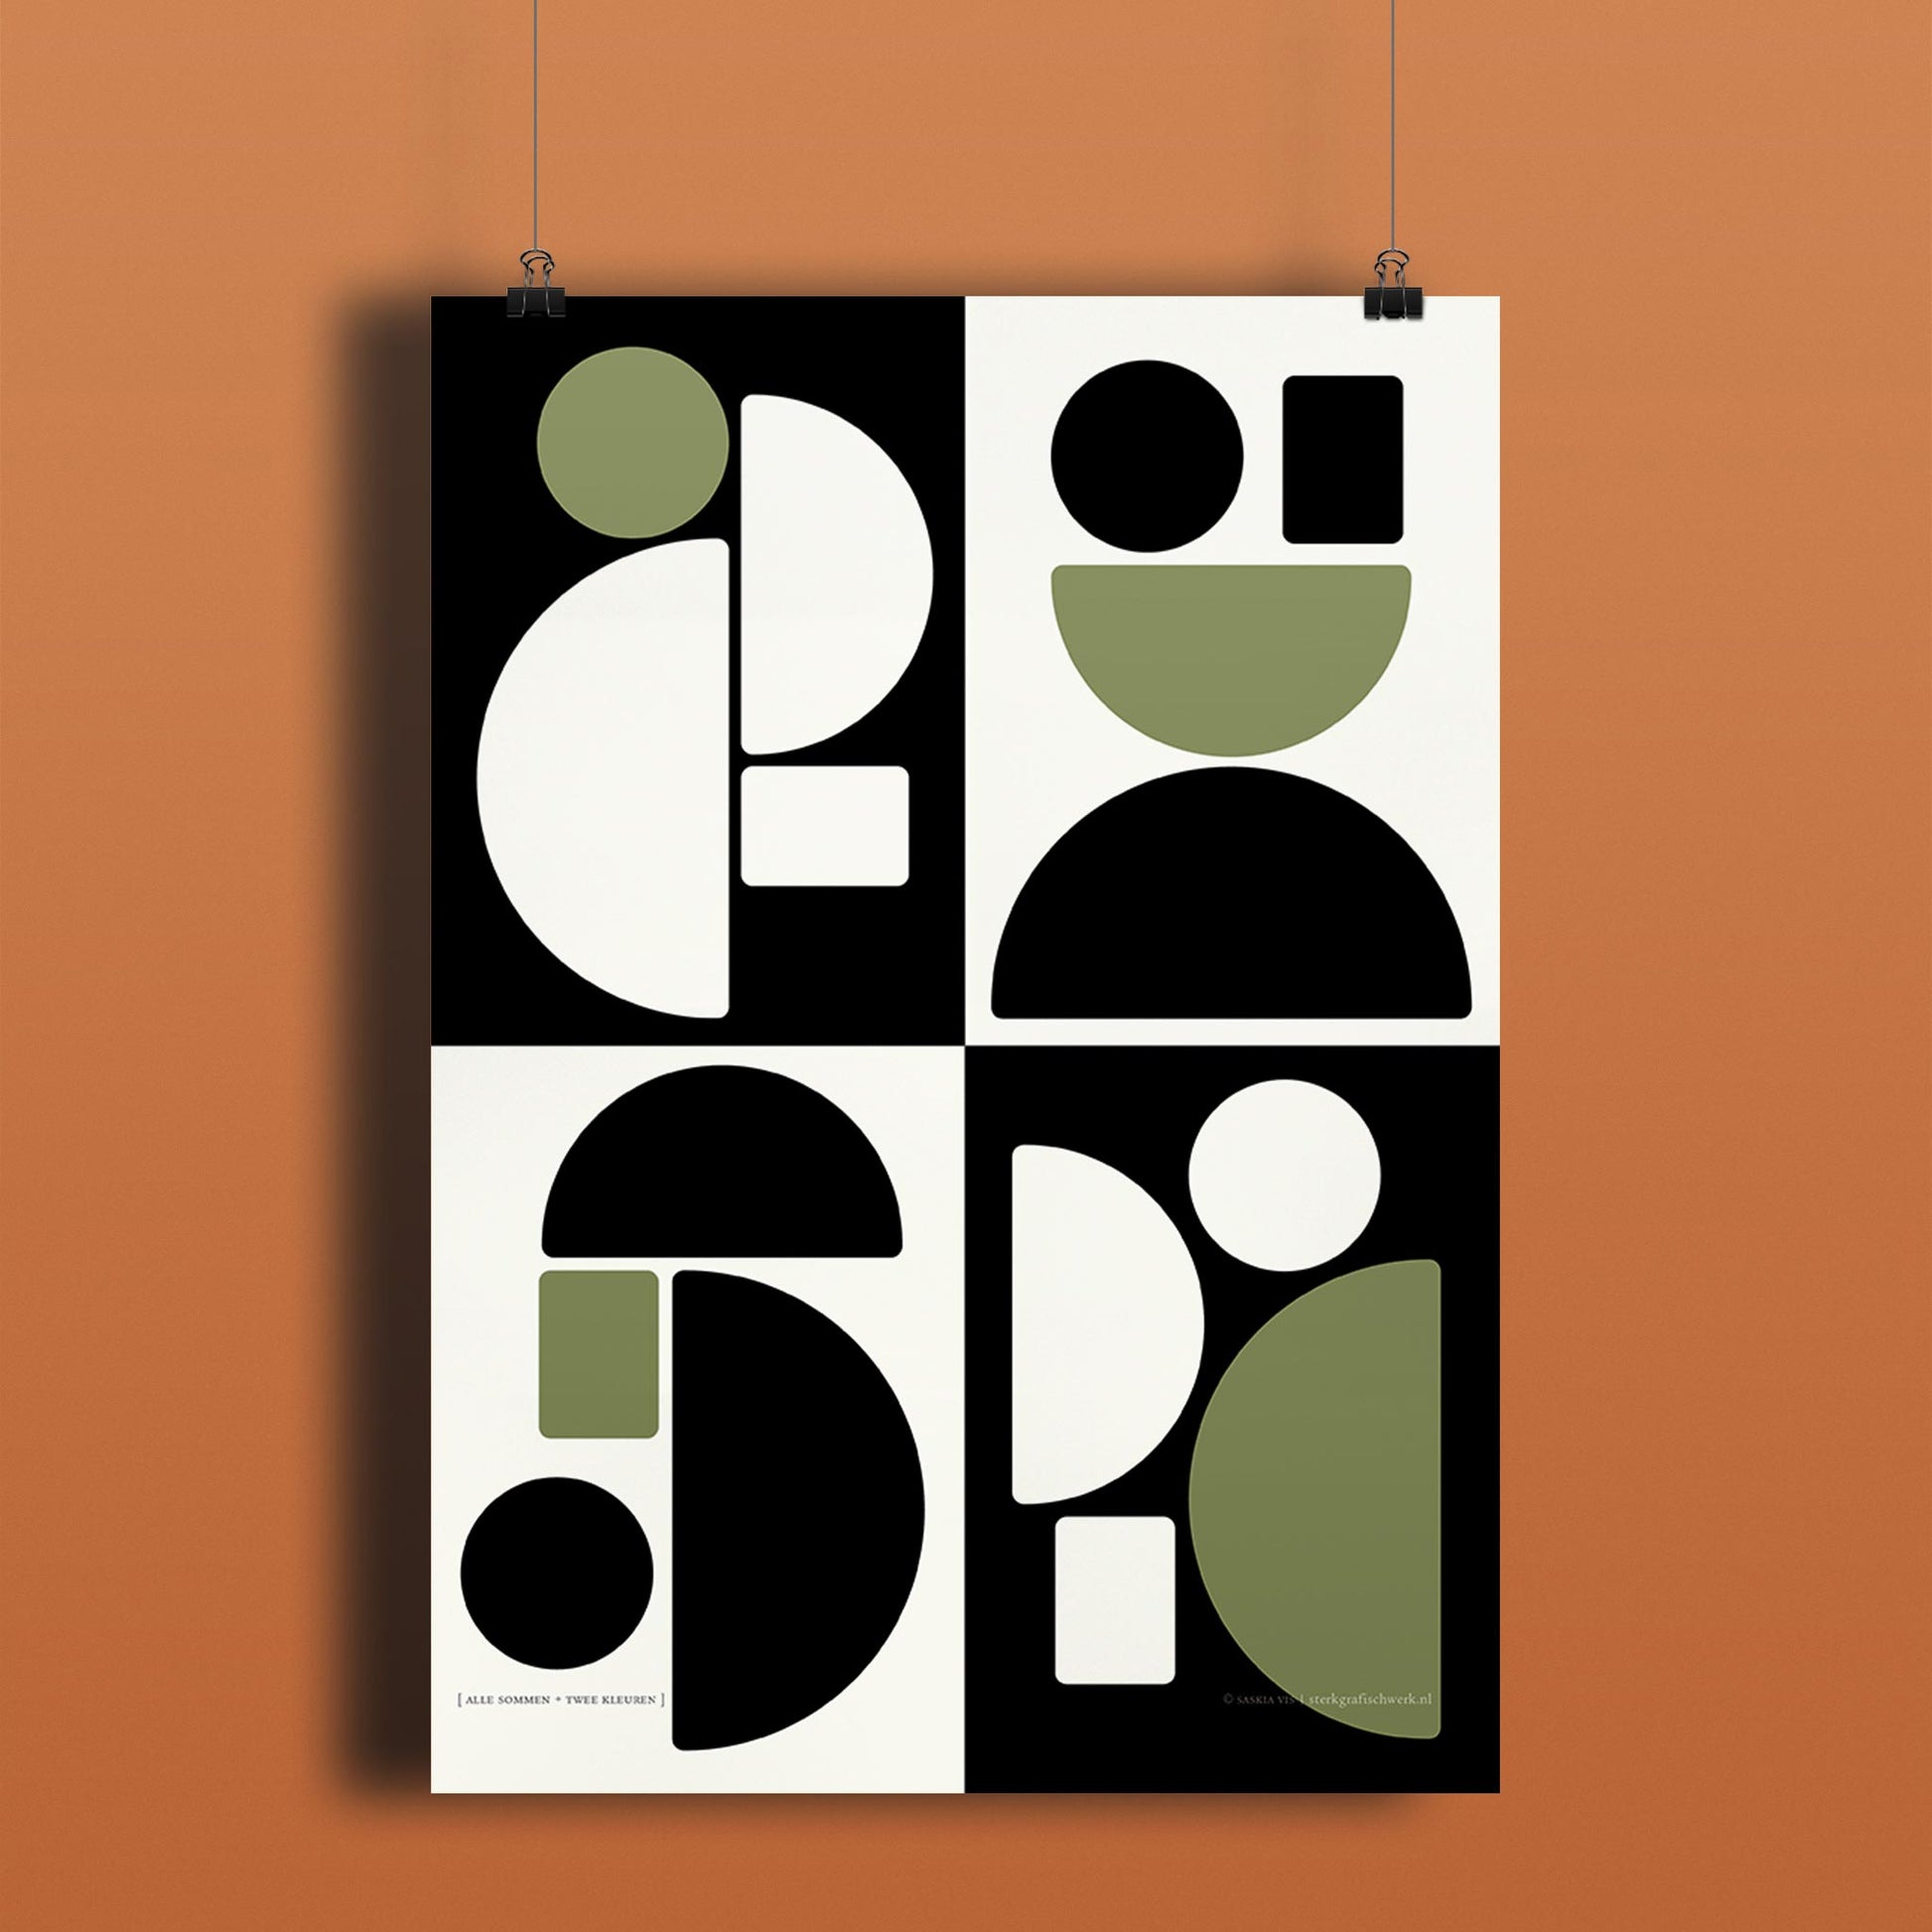 Productafbeelding, poster "alle sommen + twee kleuren", hangend aan een donker gekleurde wand, een overzichtsfoto 